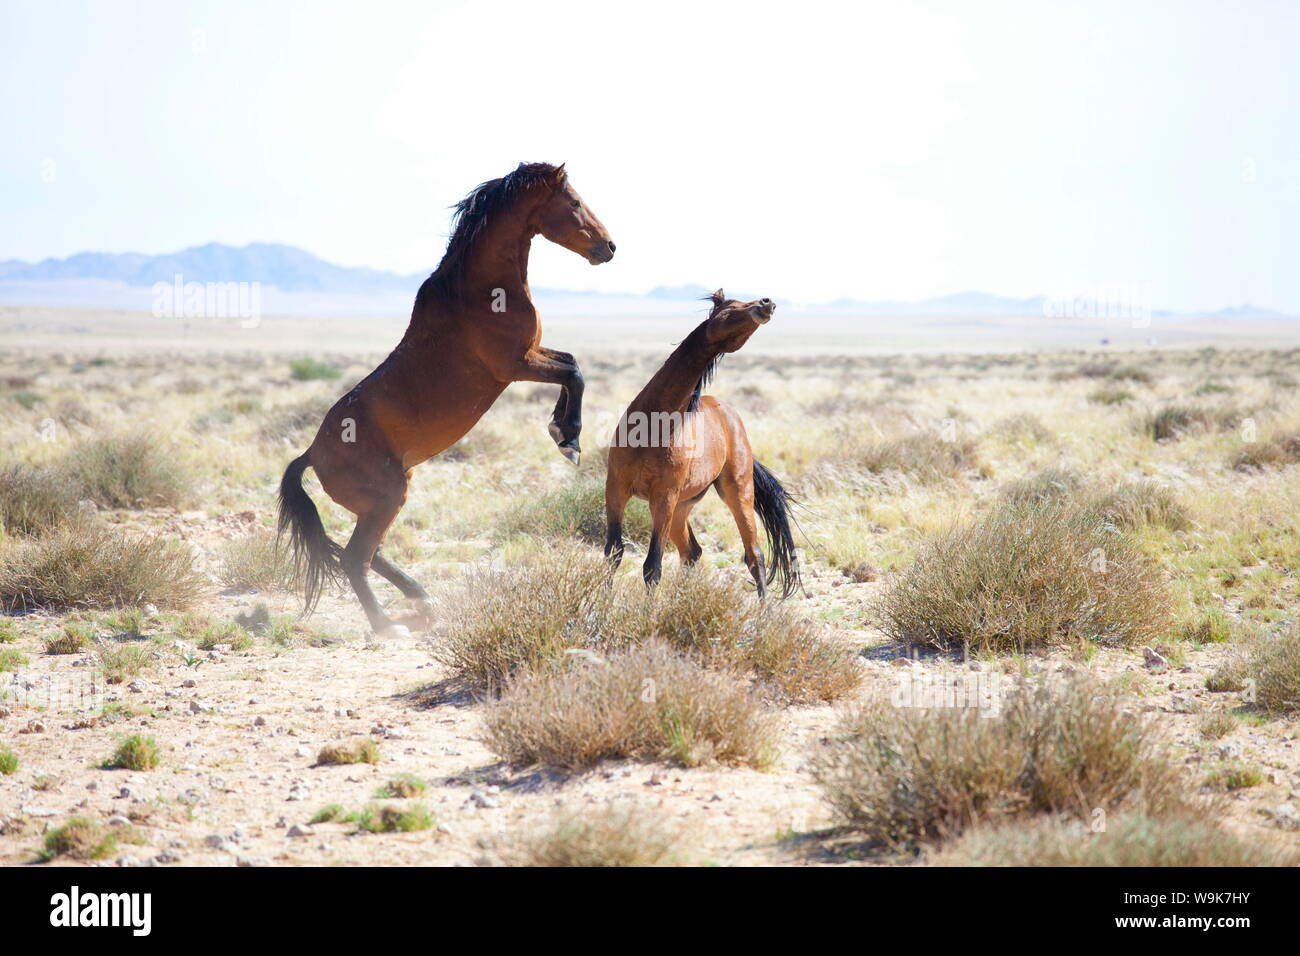 Deux chevaux sauvages combat dans le paysage blanchi près de Aus, Namibie, Afrique Banque D'Images